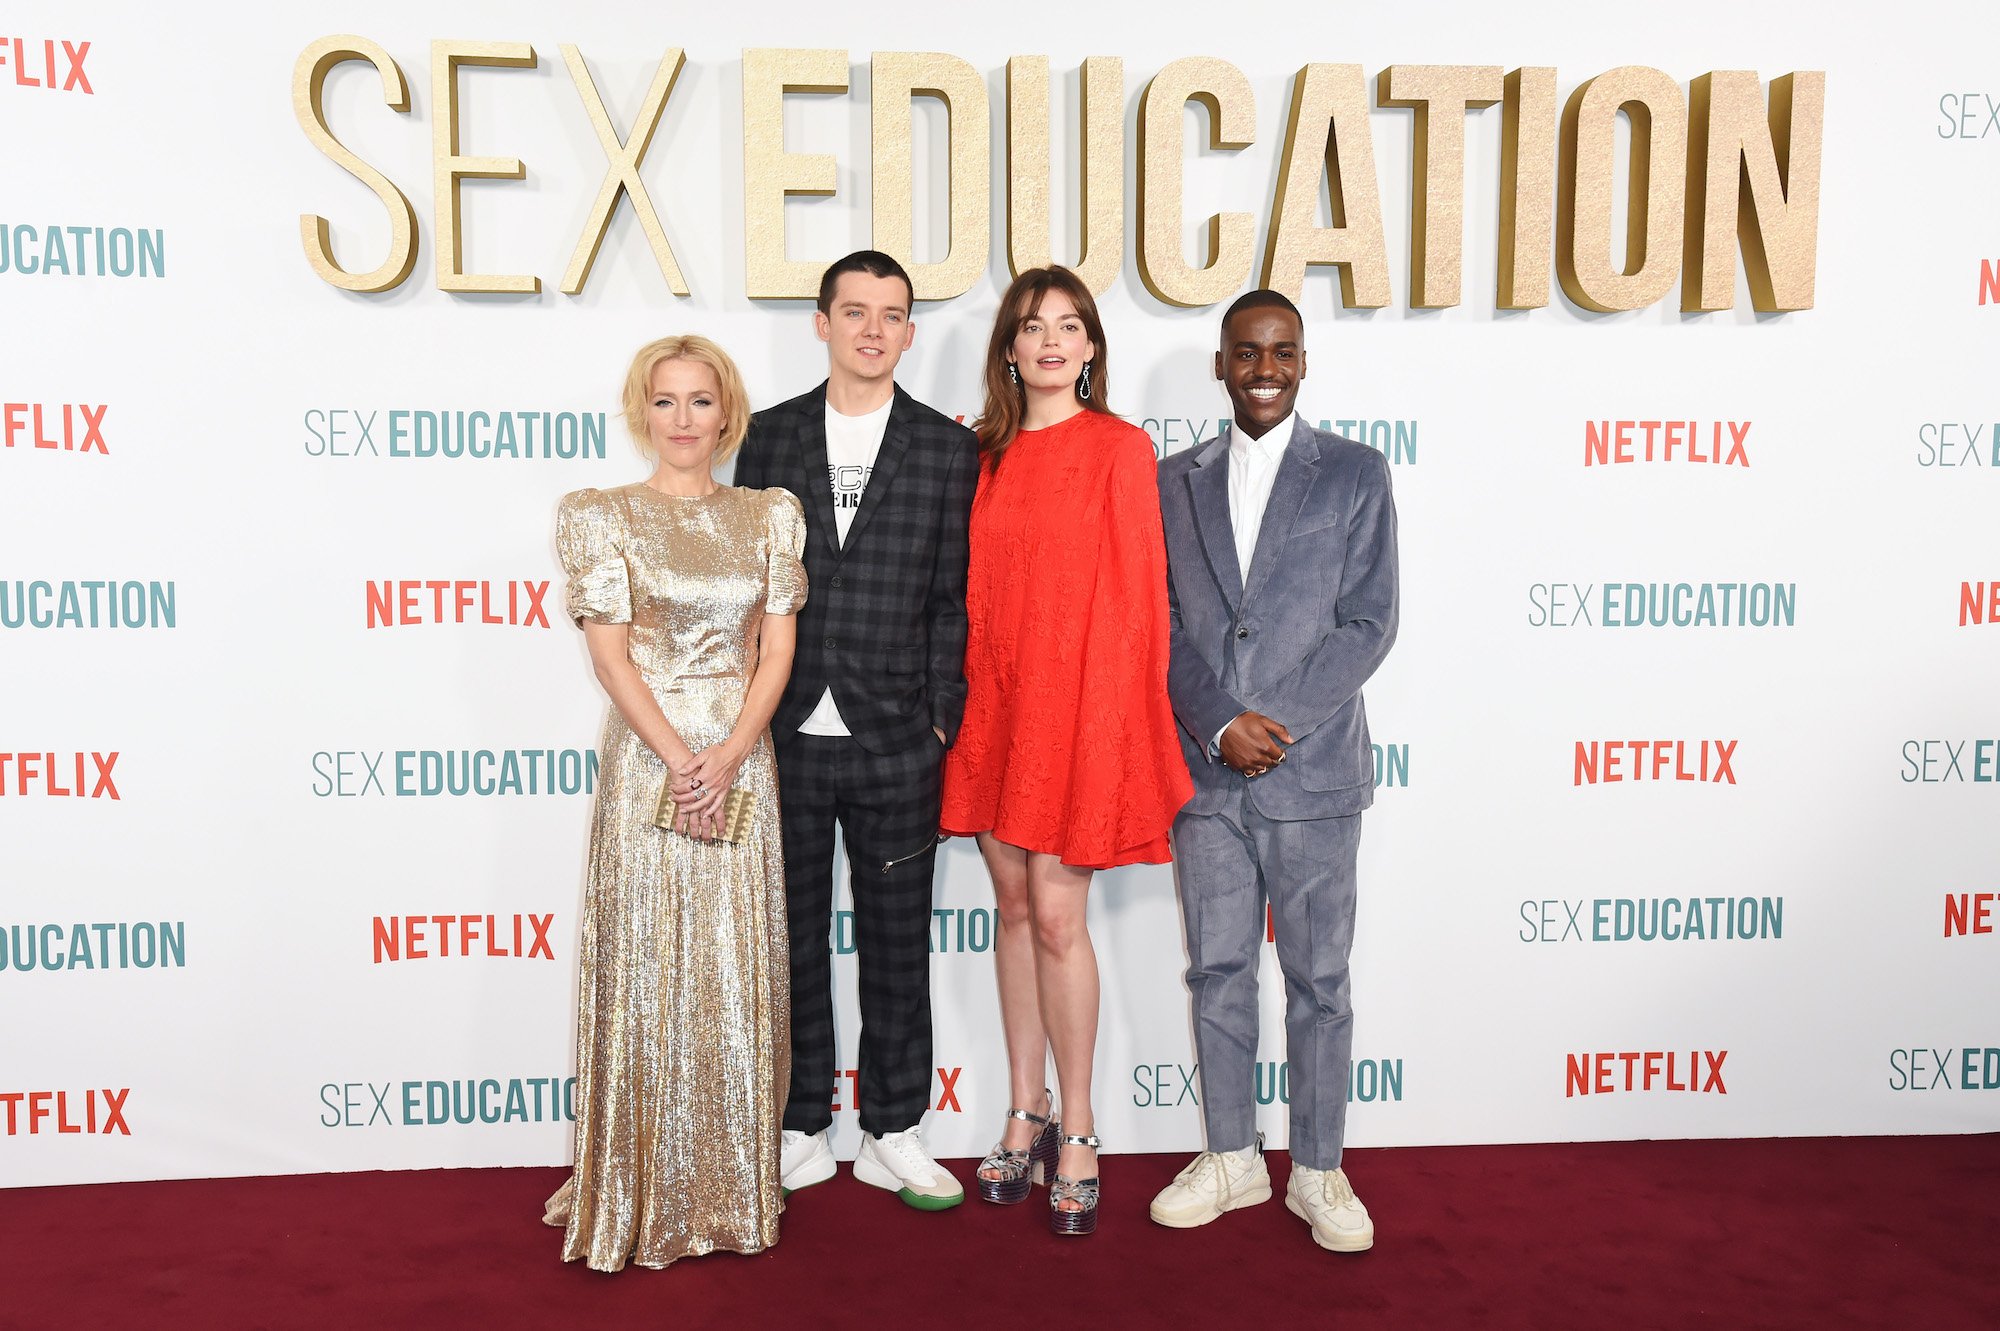 Gillian Anderson, Asa Butterfield, Emma Mackey and Ncuti Gatwa attend the World Premiere of Netflix's "Sex Education" Season 2